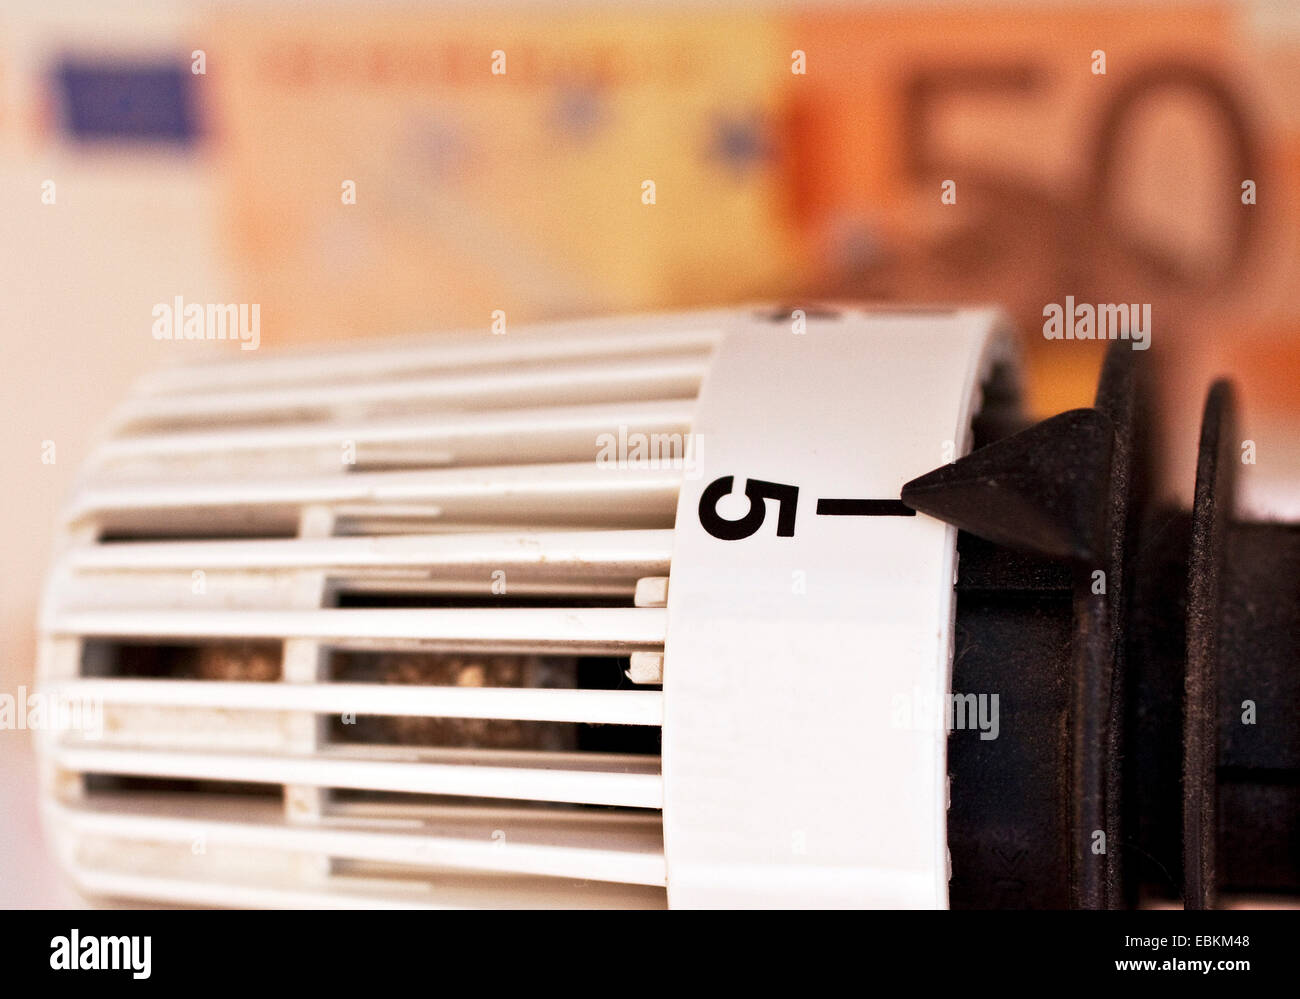 Heizkörperthermostat und Banknoten, Symbolbild für Heizkosten, Deutschland Stockfoto